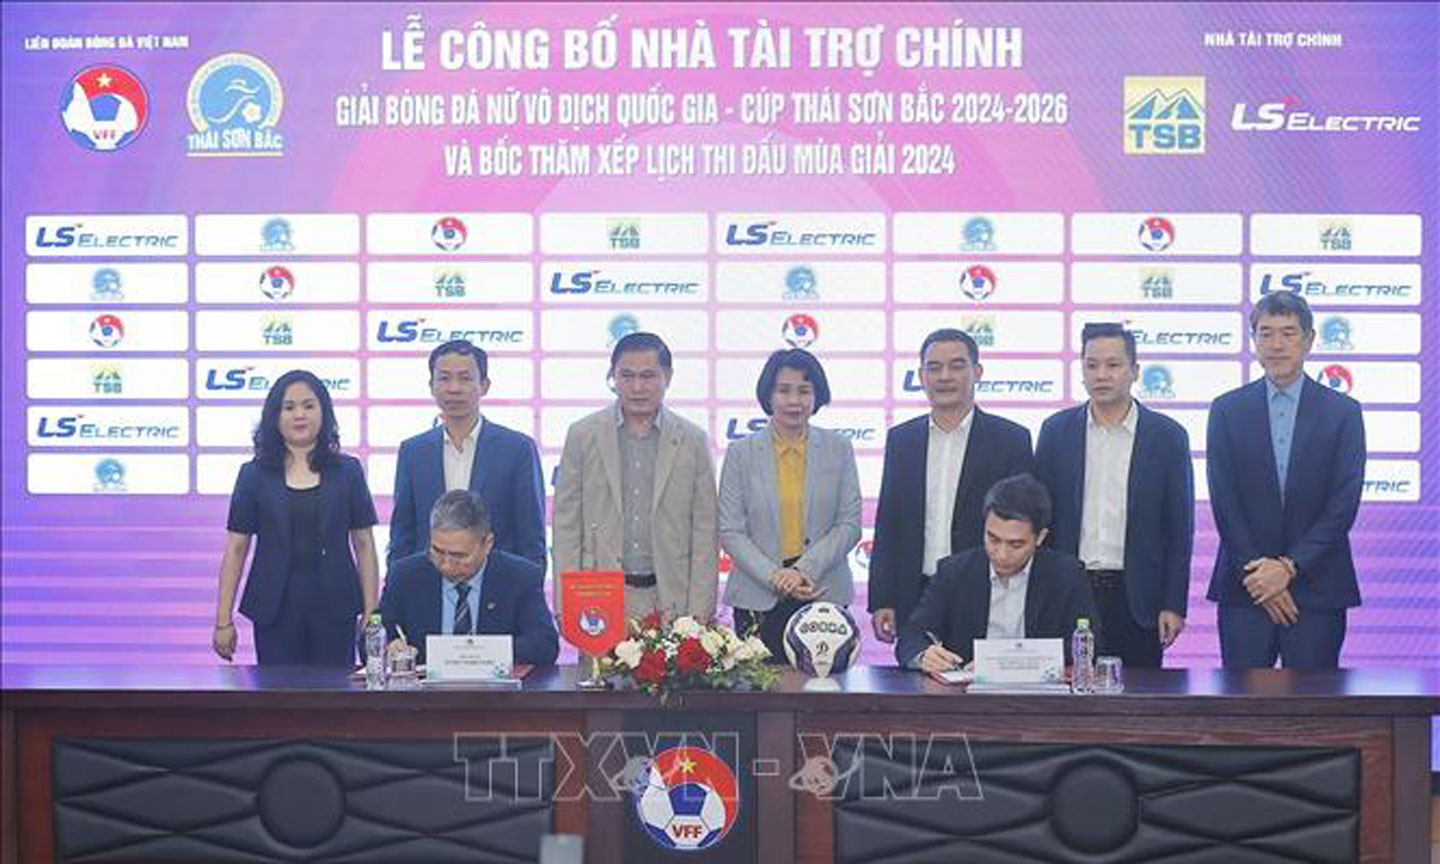 Lễ ký kết Nhà tài trợ chính Giải Bóng đá Nữ VĐQG - Cúp Thái Sơn Bắc 2024 - 2026. Ảnh: Minh Quyết/TTXVN